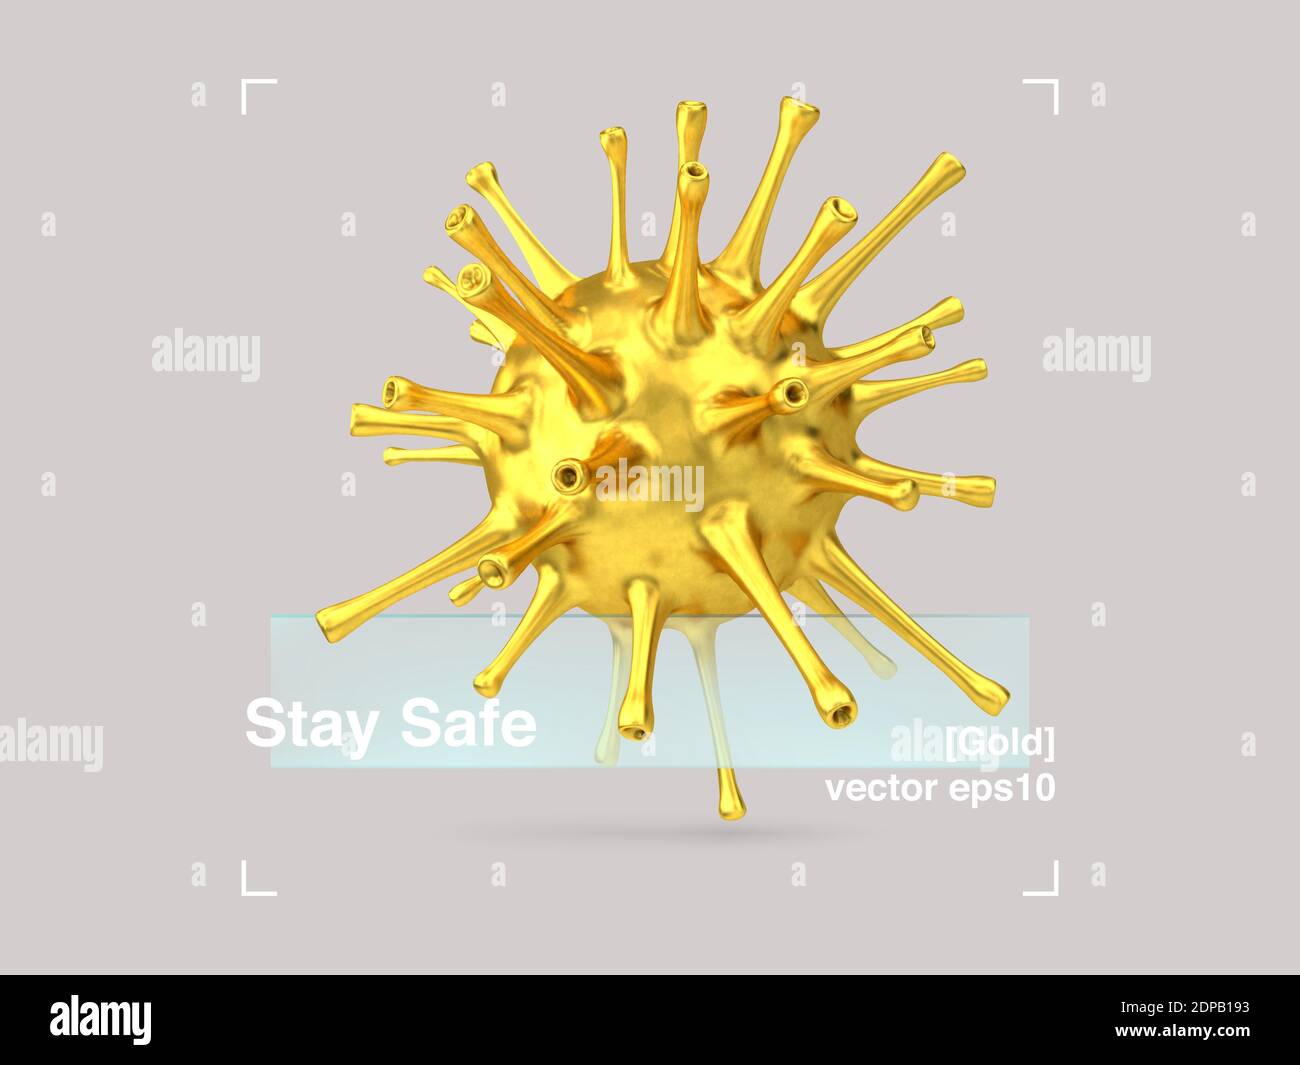 Composizione 3D di vetro e virus dell'oro in uno stile di design moderno. COVID-19 Banner Pandemic Stay Safe. Poster di disegno di illustrazione astratta. EPS vettoriale Illustrazione Vettoriale